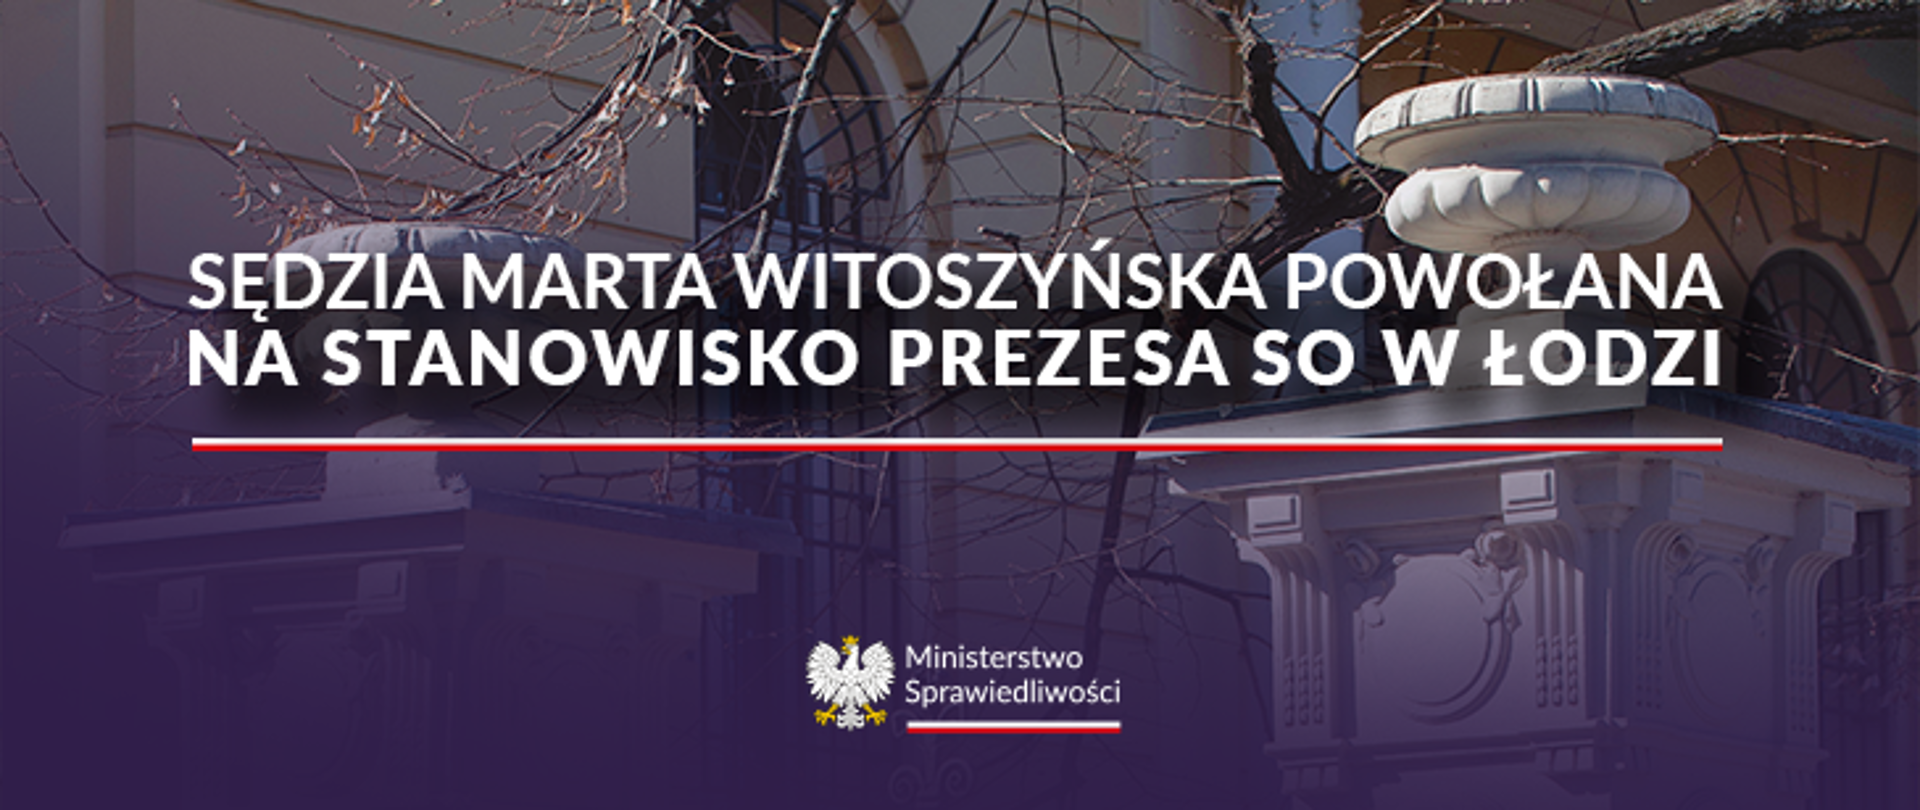 Minister Sprawiedliwości Adam Bodnar powołał sędzię Martę Witoszyńską na stanowisko Prezesa Sądu Okręgowego w Łodzi